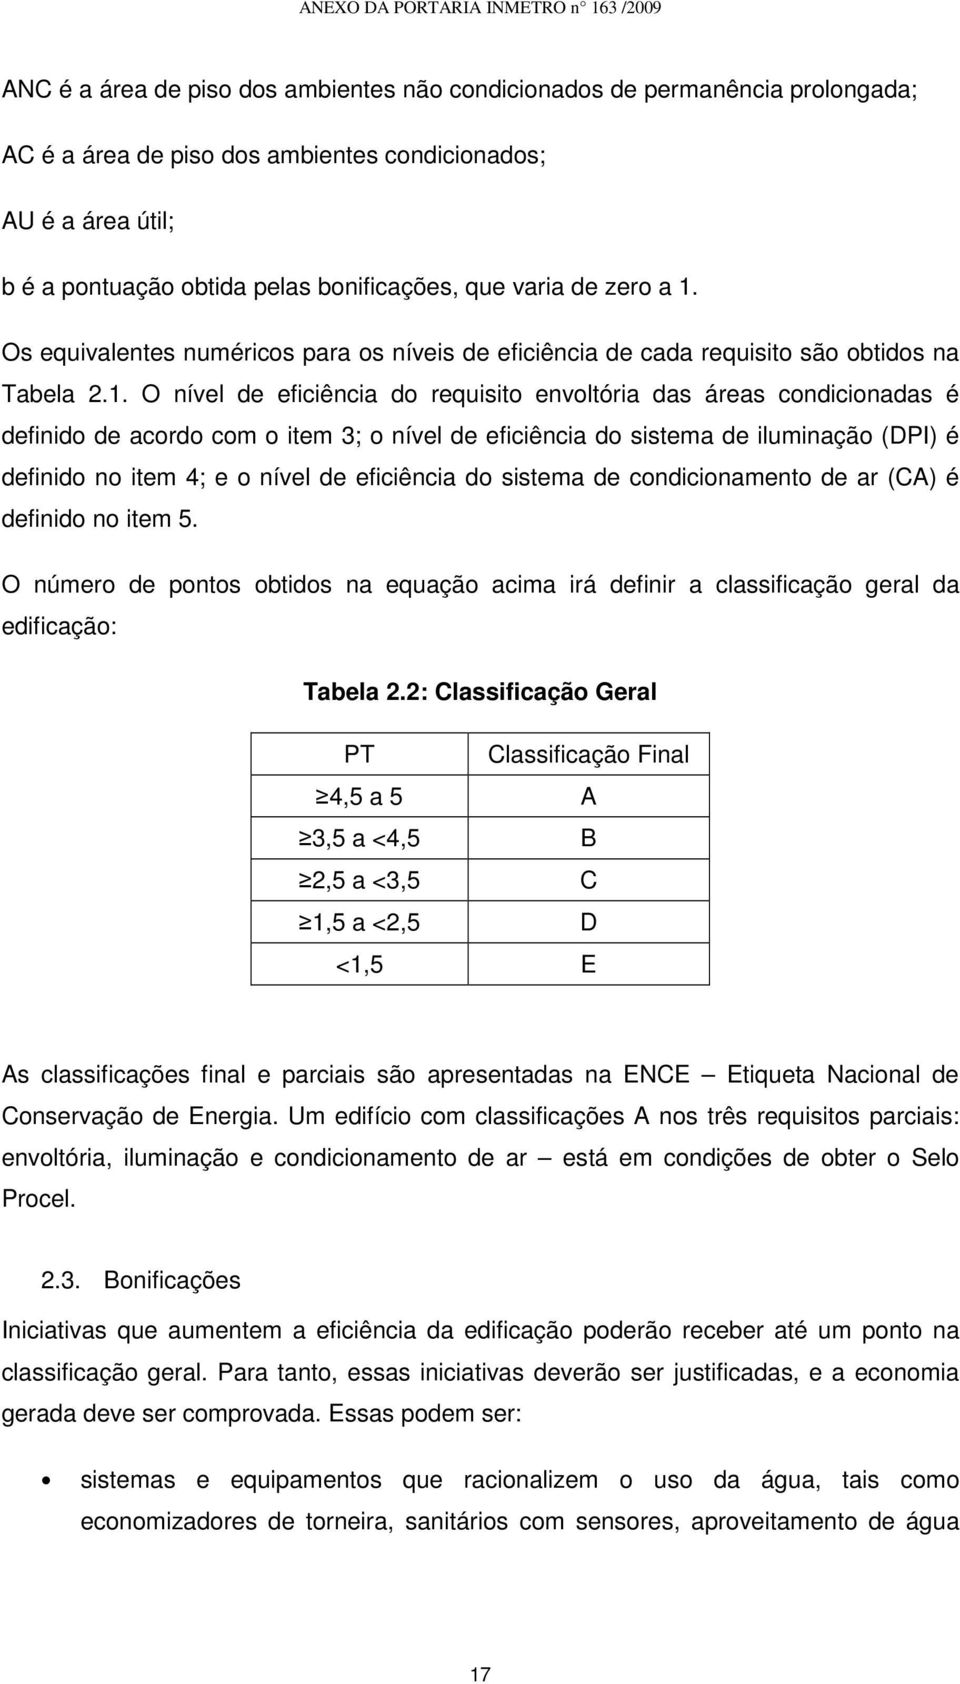 Os equivalentes numéricos para os níveis de eficiência de cada requisito são obtidos na Tabela 2.1.